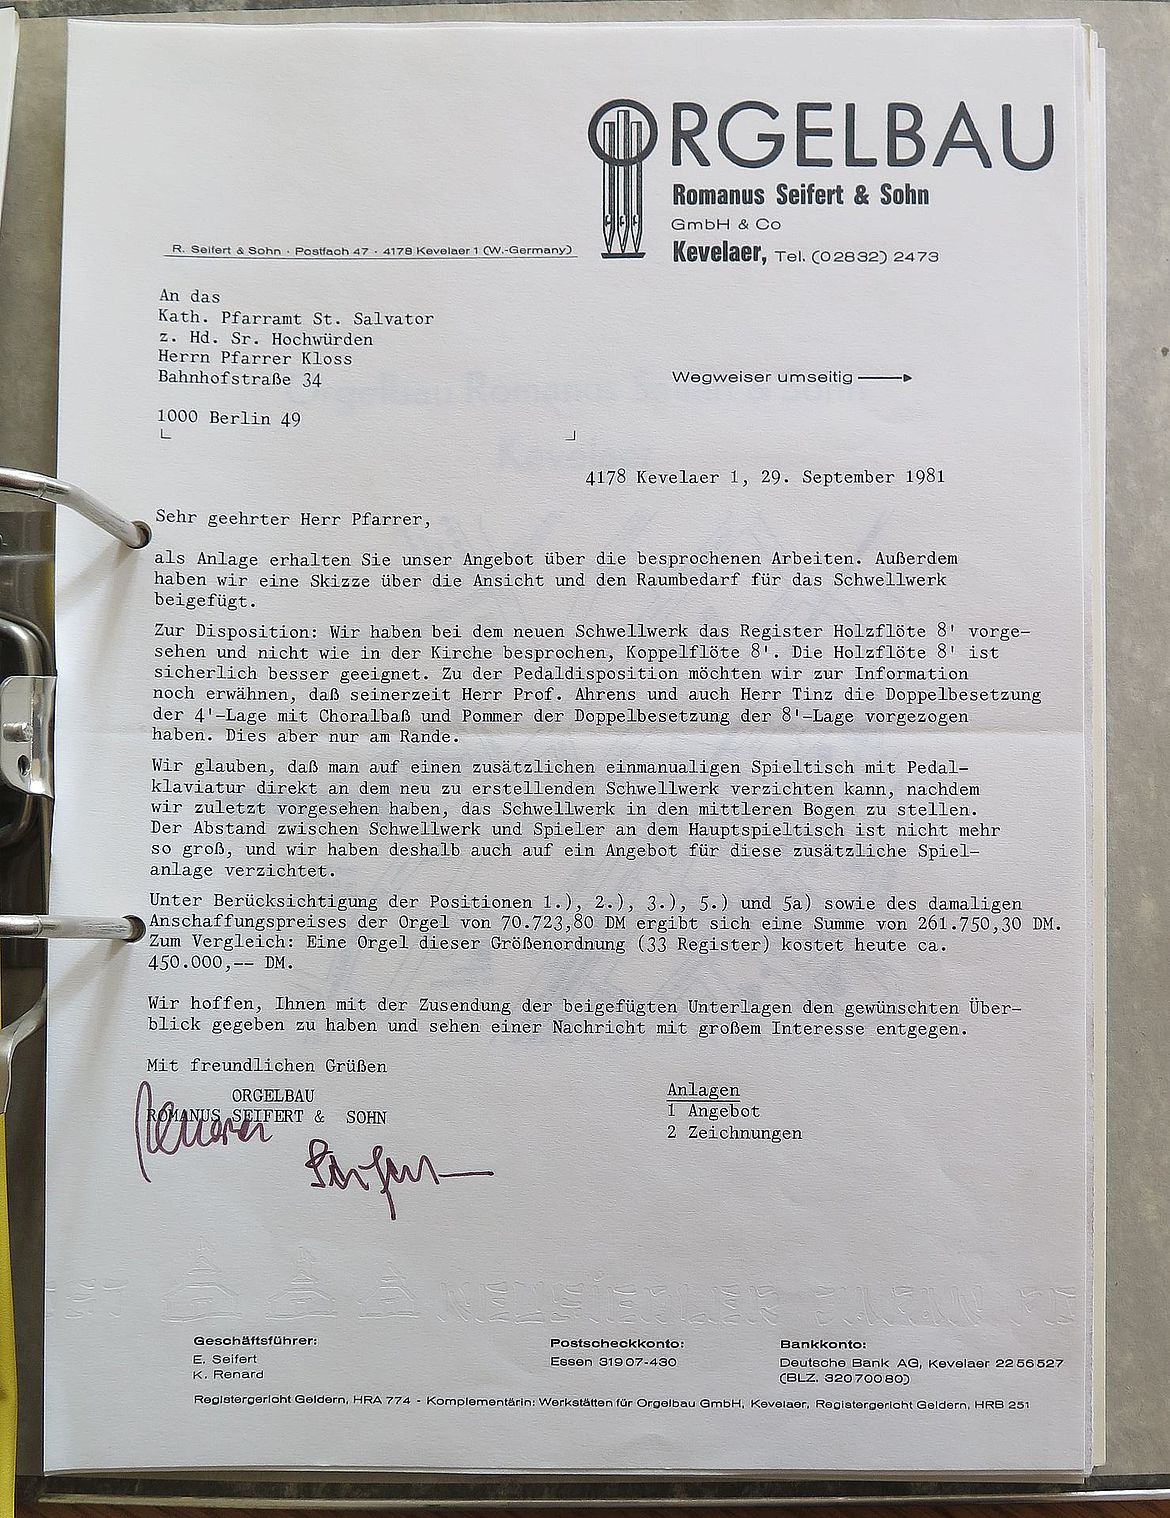 Angebot der Firma Romanus Seifert und Sohn, Kevelaer vom 29. September 1981 - Privatbesitz